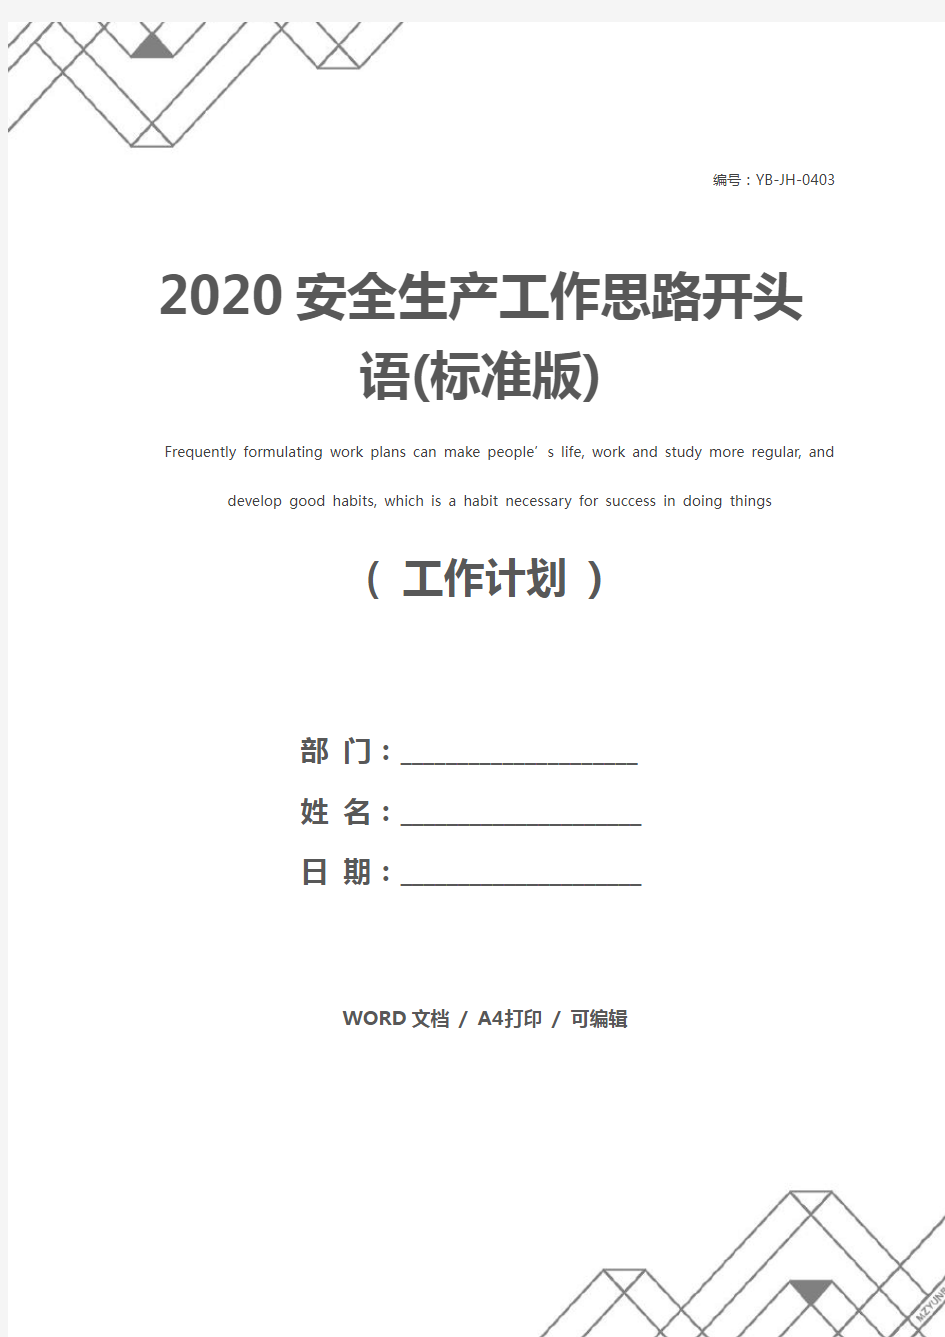 2020安全生产工作思路开头语(标准版)